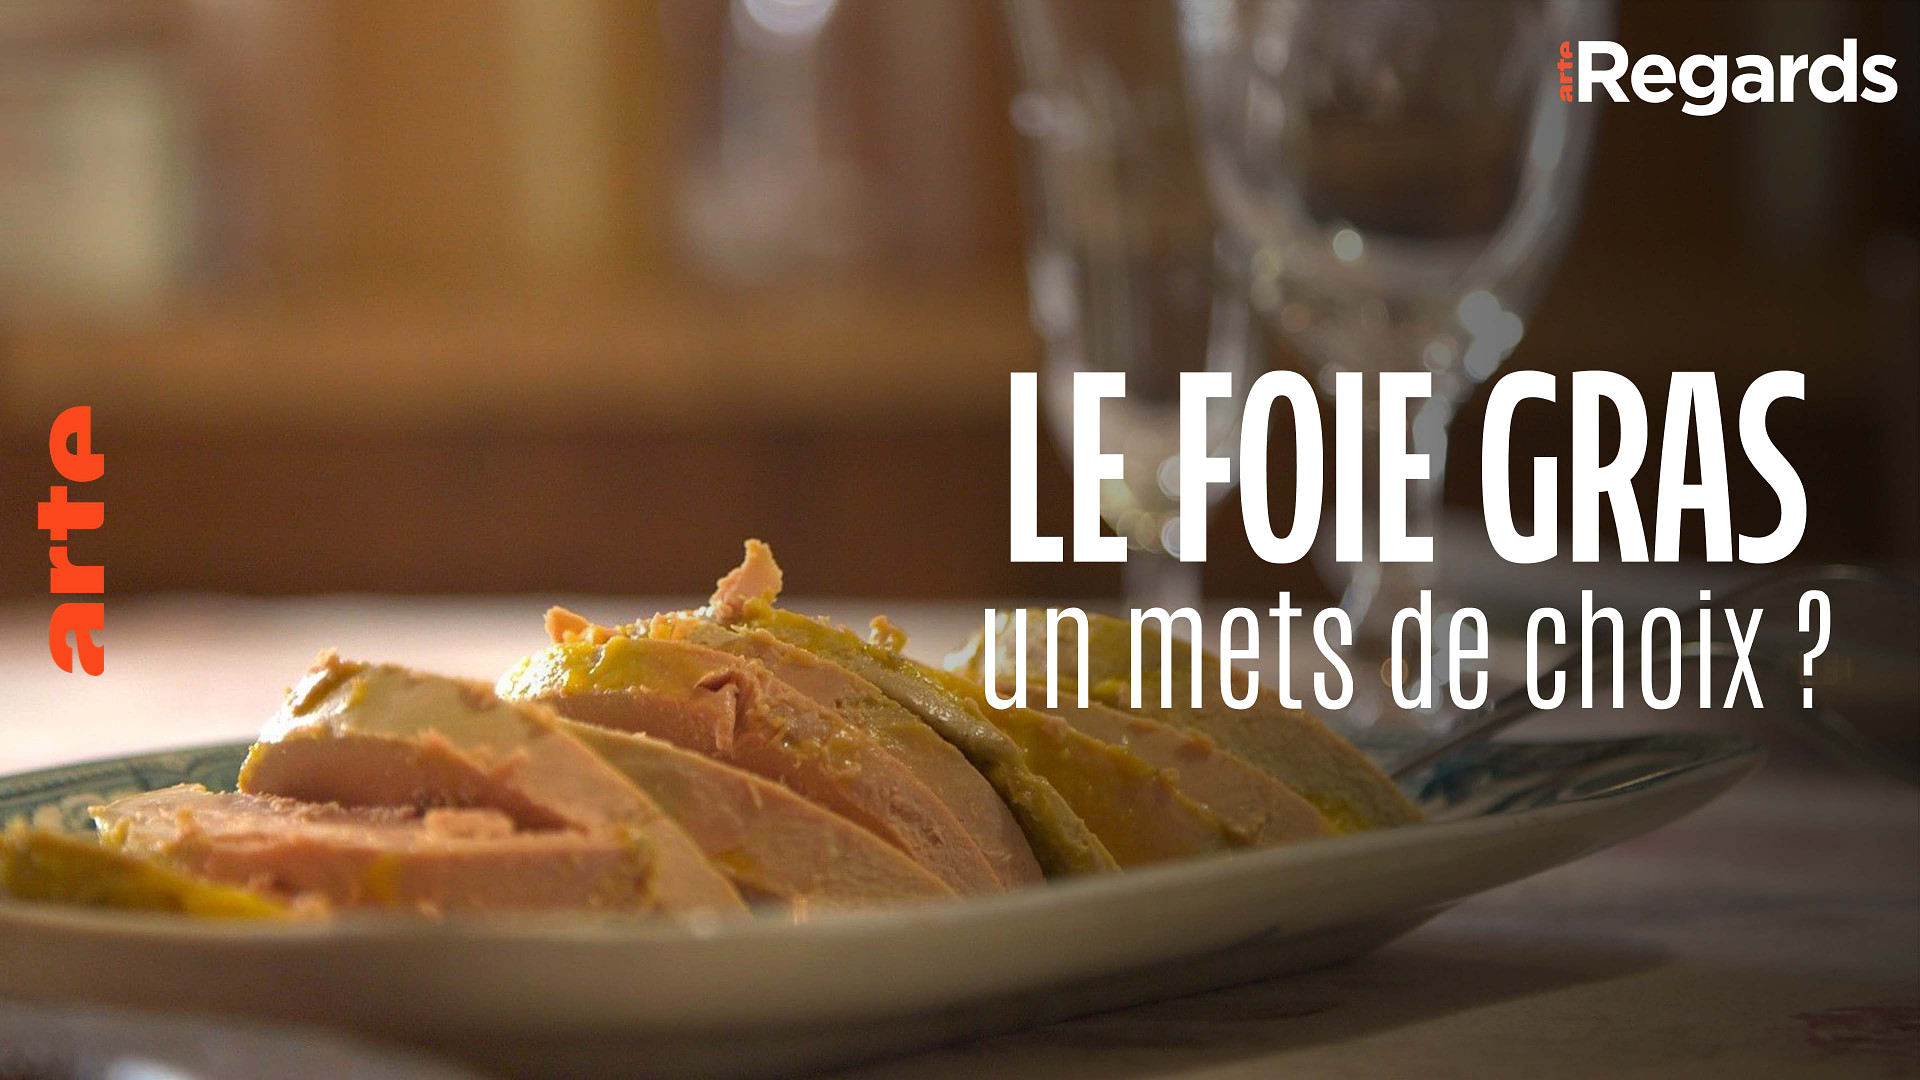 Du foie gras sans gavage au Québec